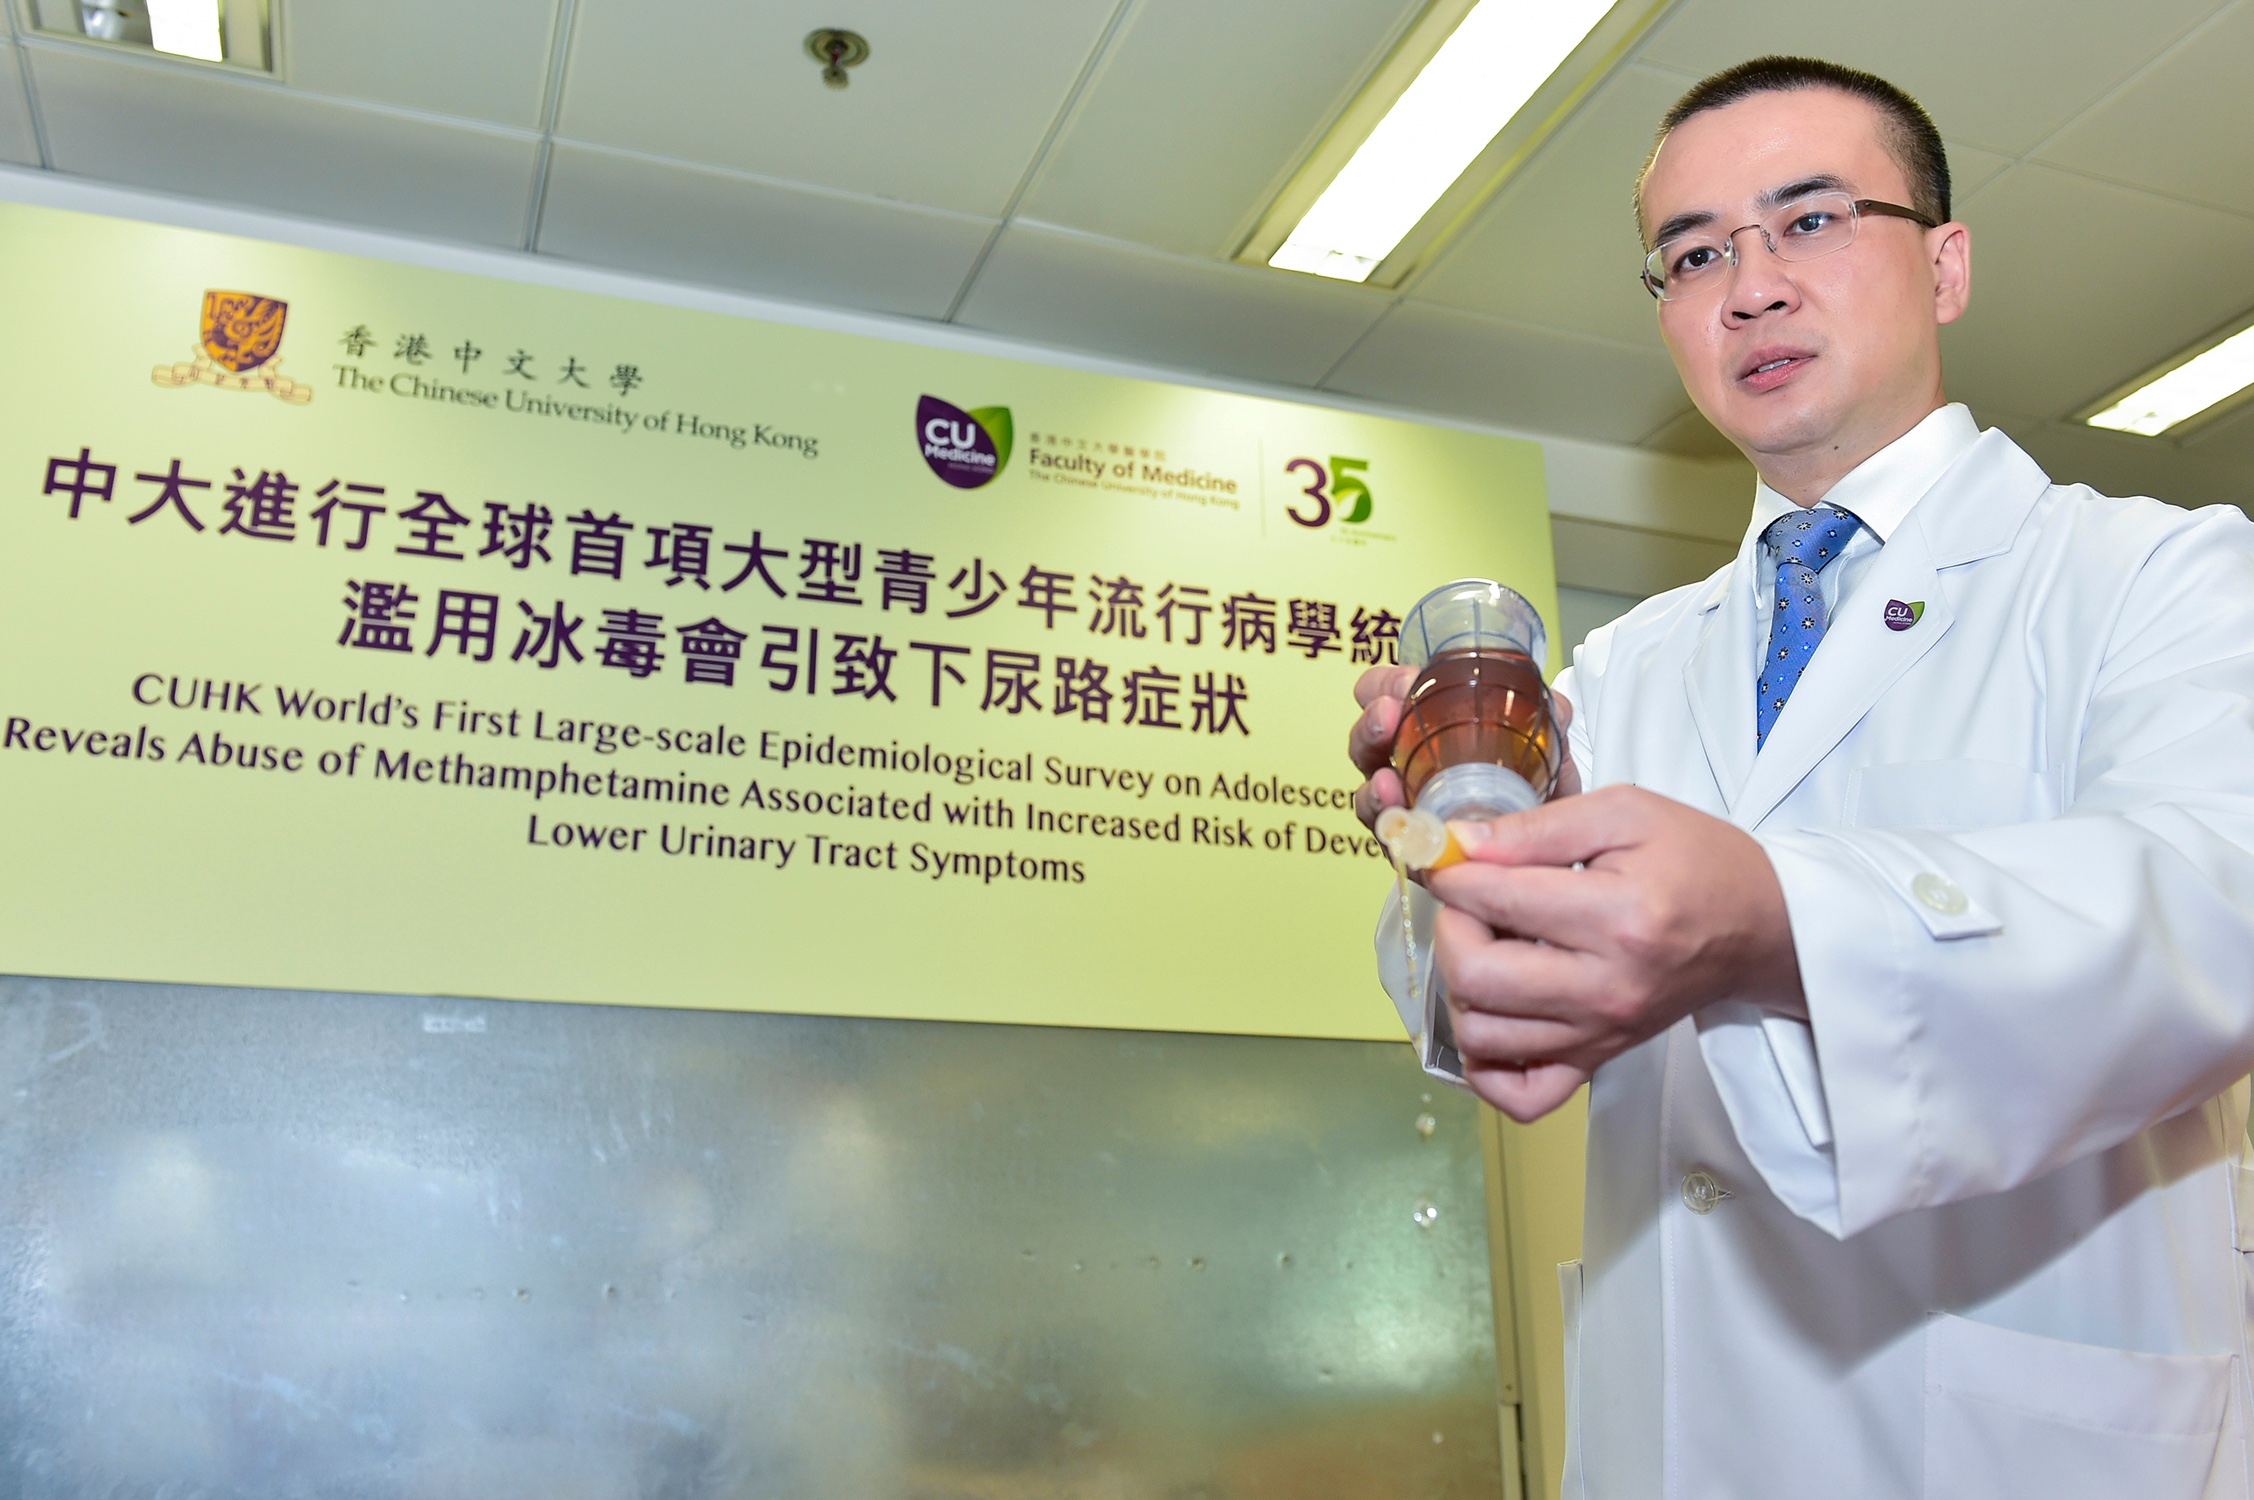 中大醫學院外科學系泌尿外科教授及青少年泌尿治療中心主管吳志輝教授表示，冰毒有可能透過神經系統影響膀胱括約肌的控制，構成排尿障礙。